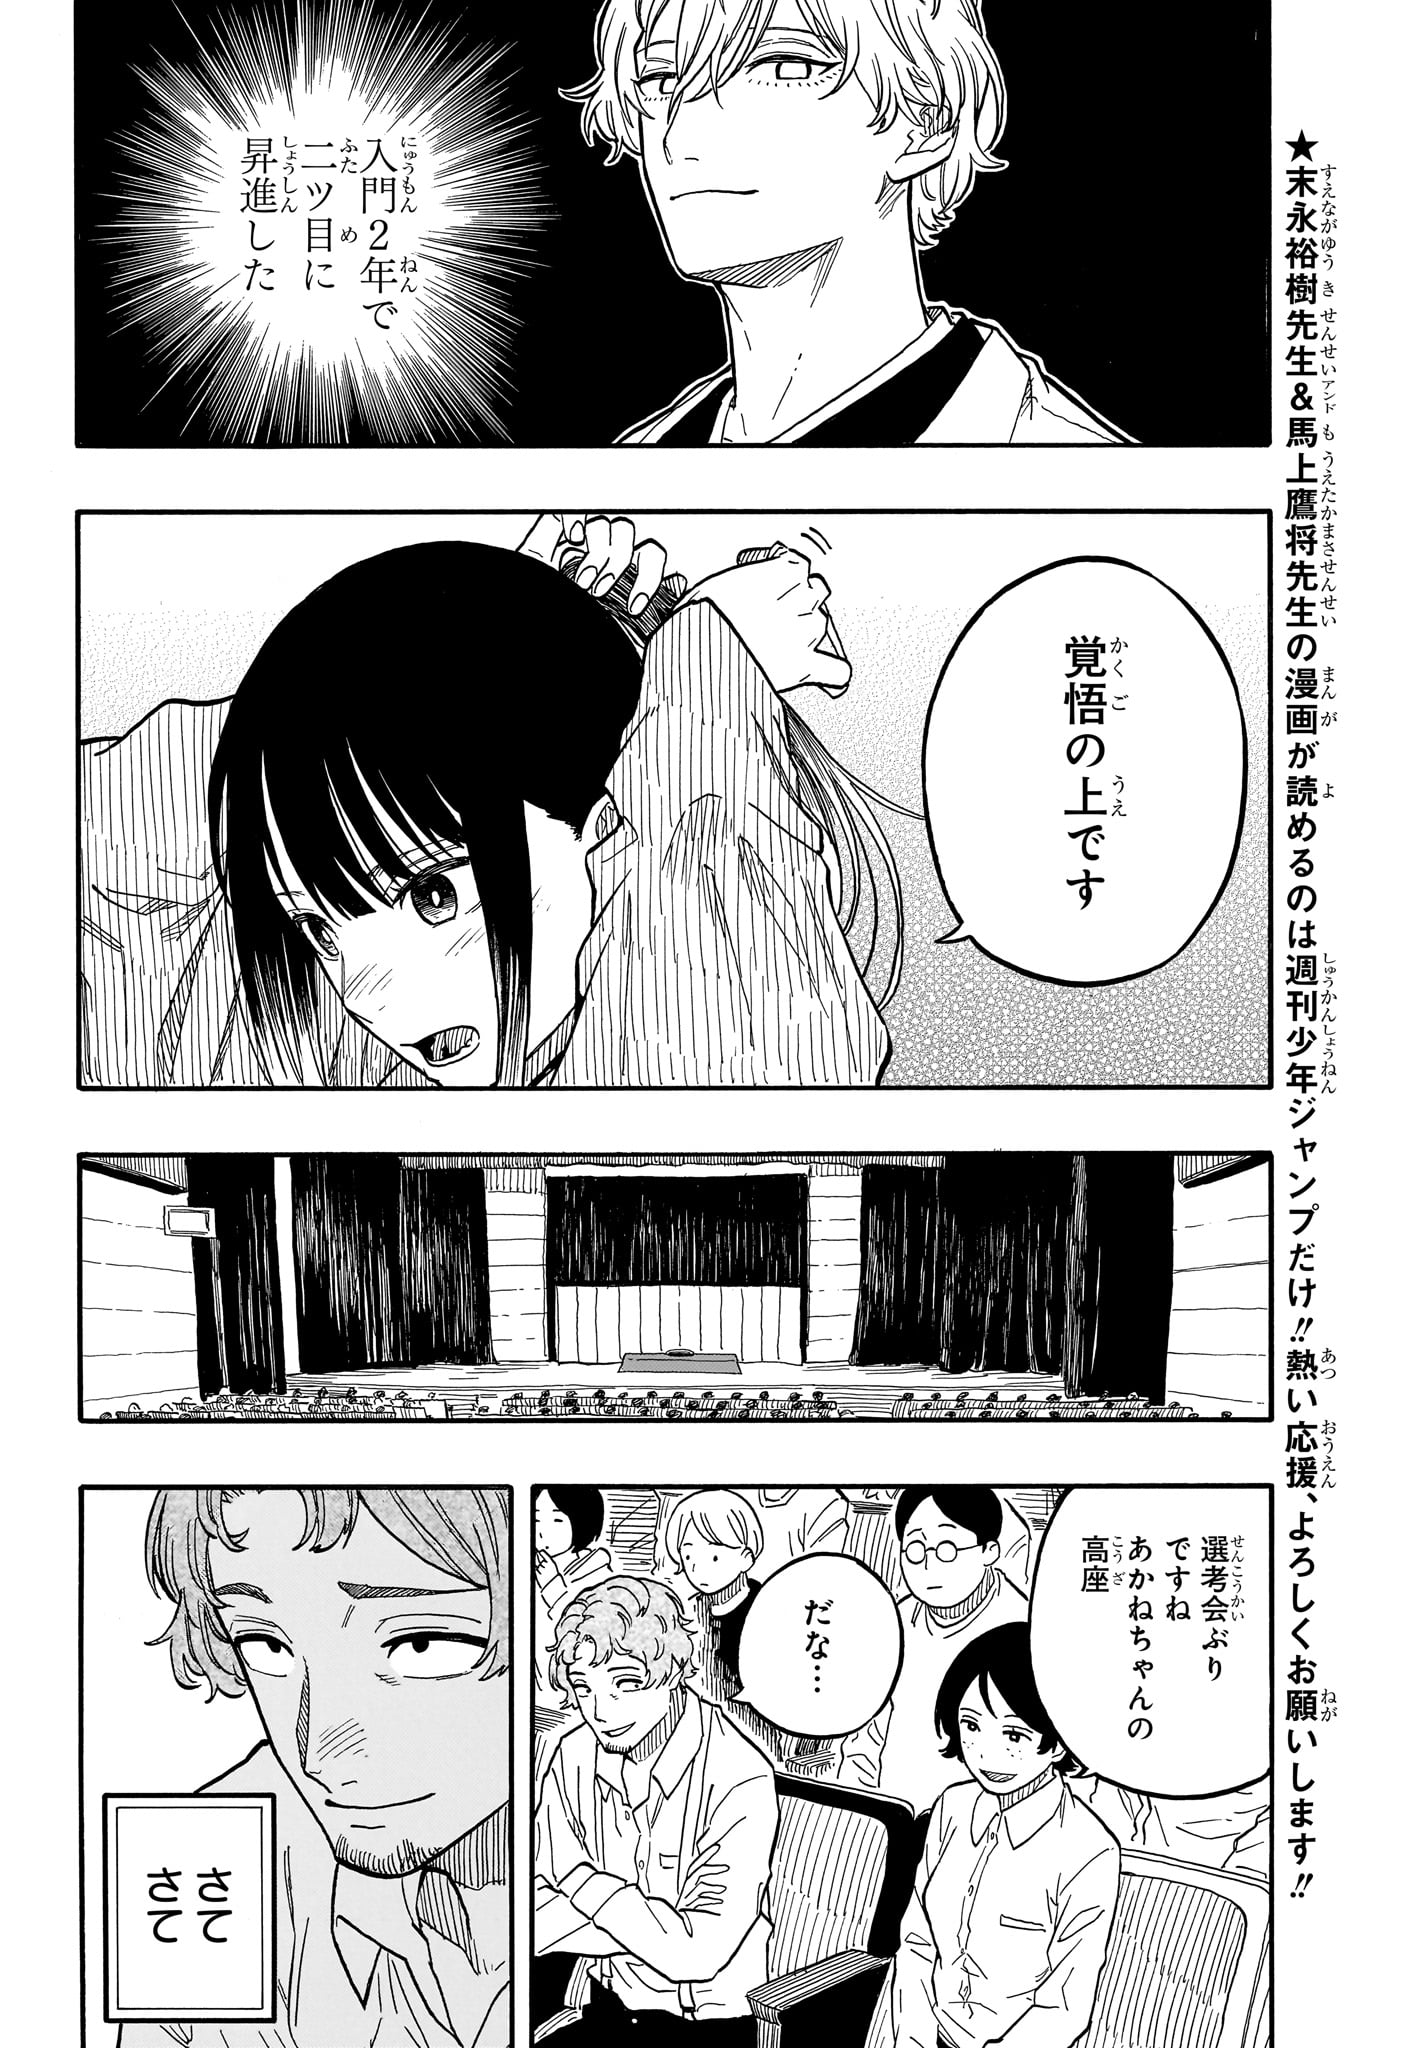 Akane-Banashi - Chapter 97 - Page 2